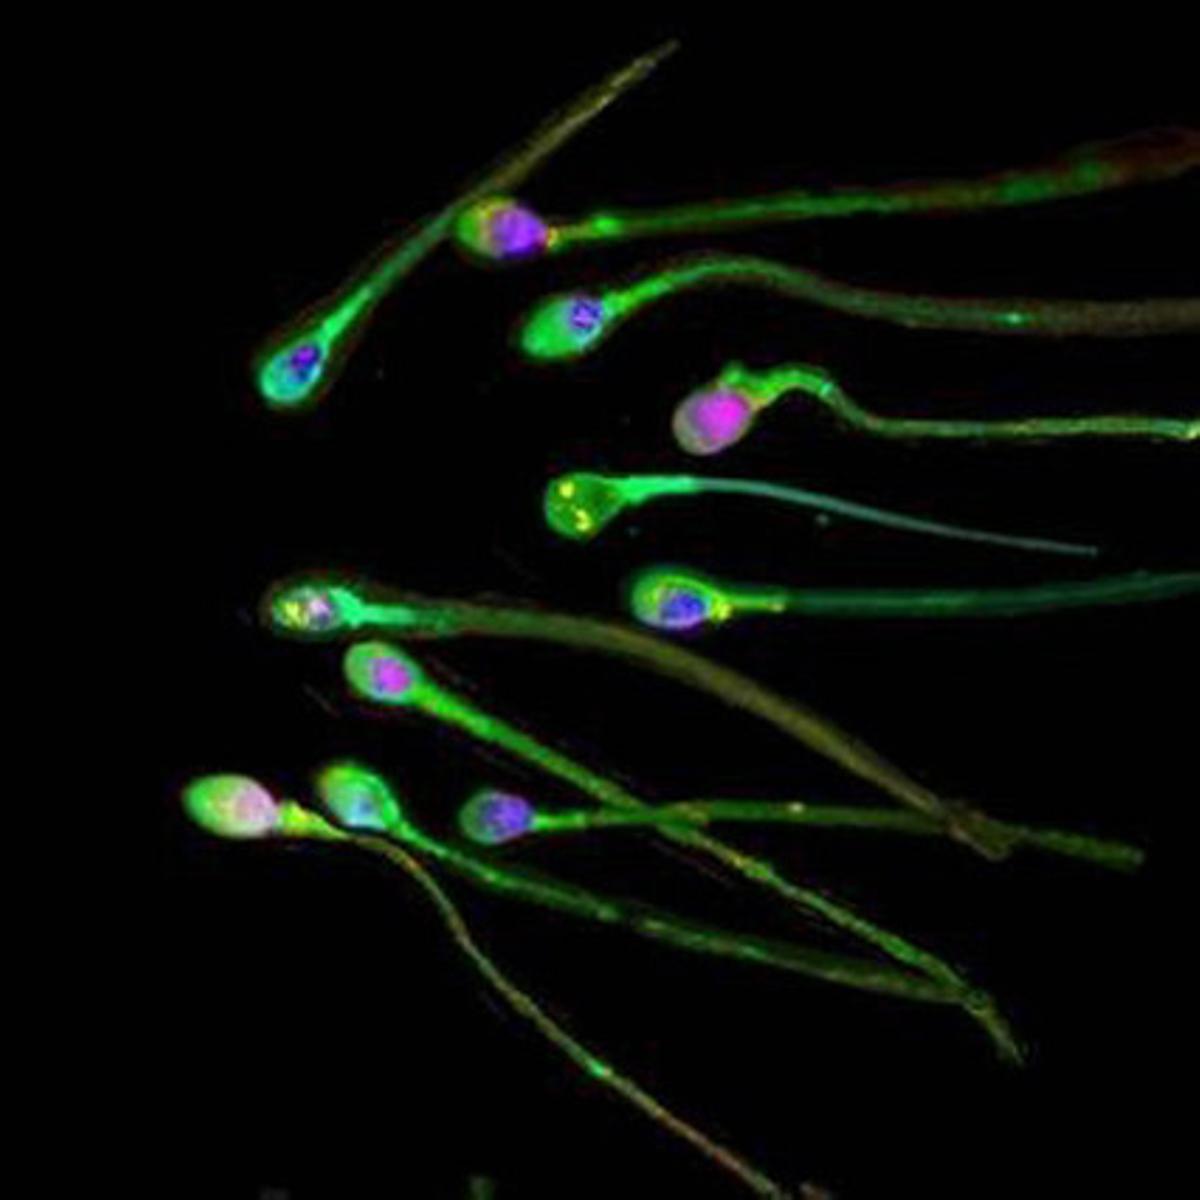 Fotografia d’esperma humana difosa per la revista ’The Journal of Science’.